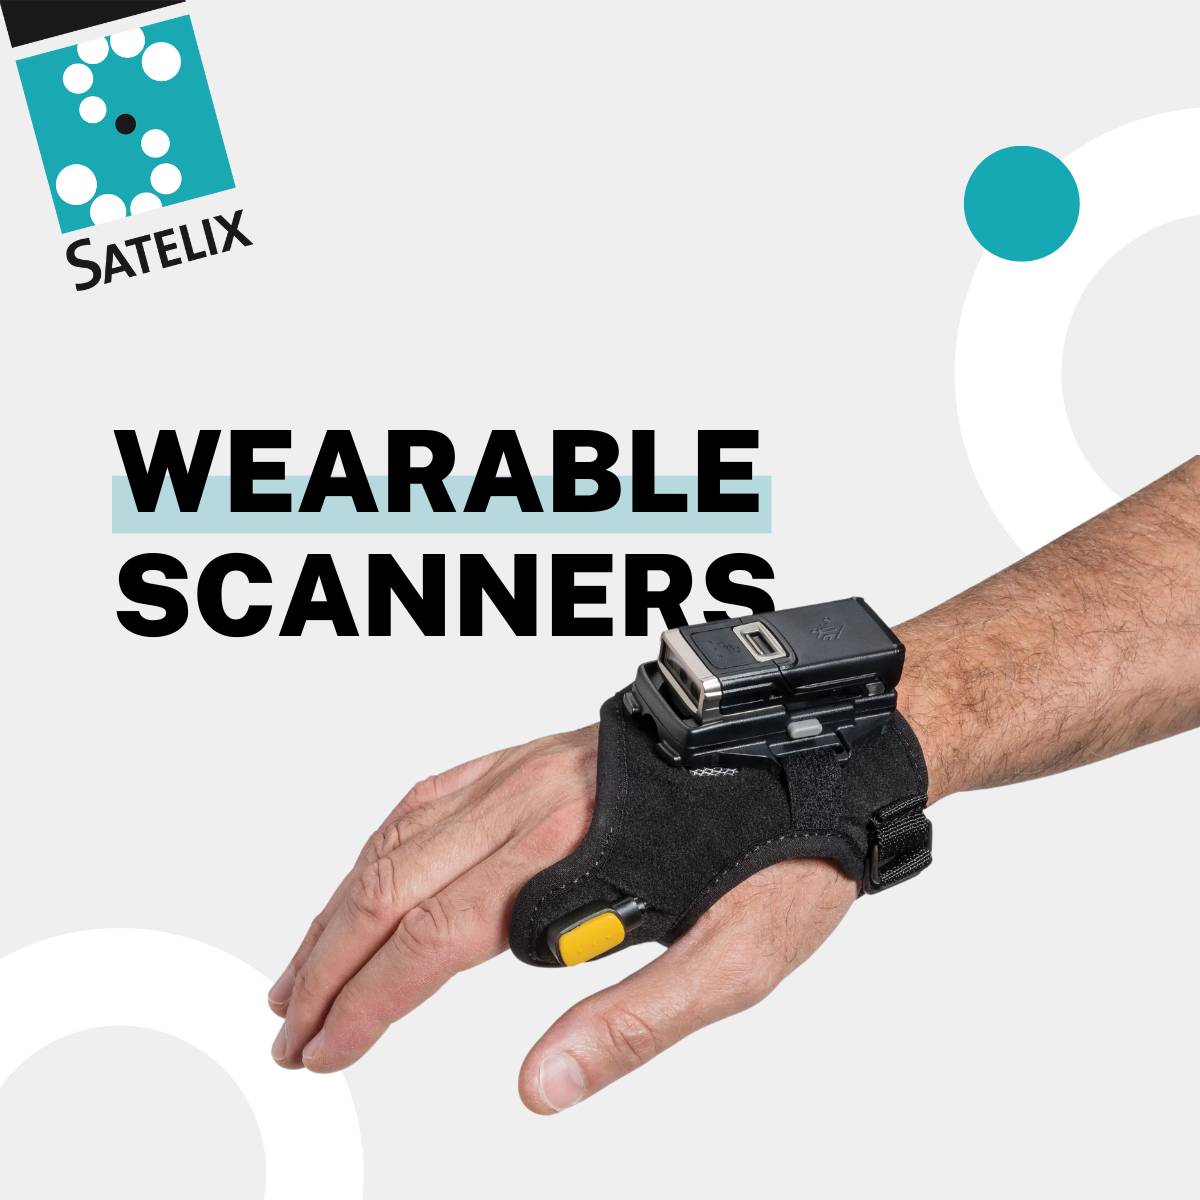 Article EN – Wearable scanners – Satelix